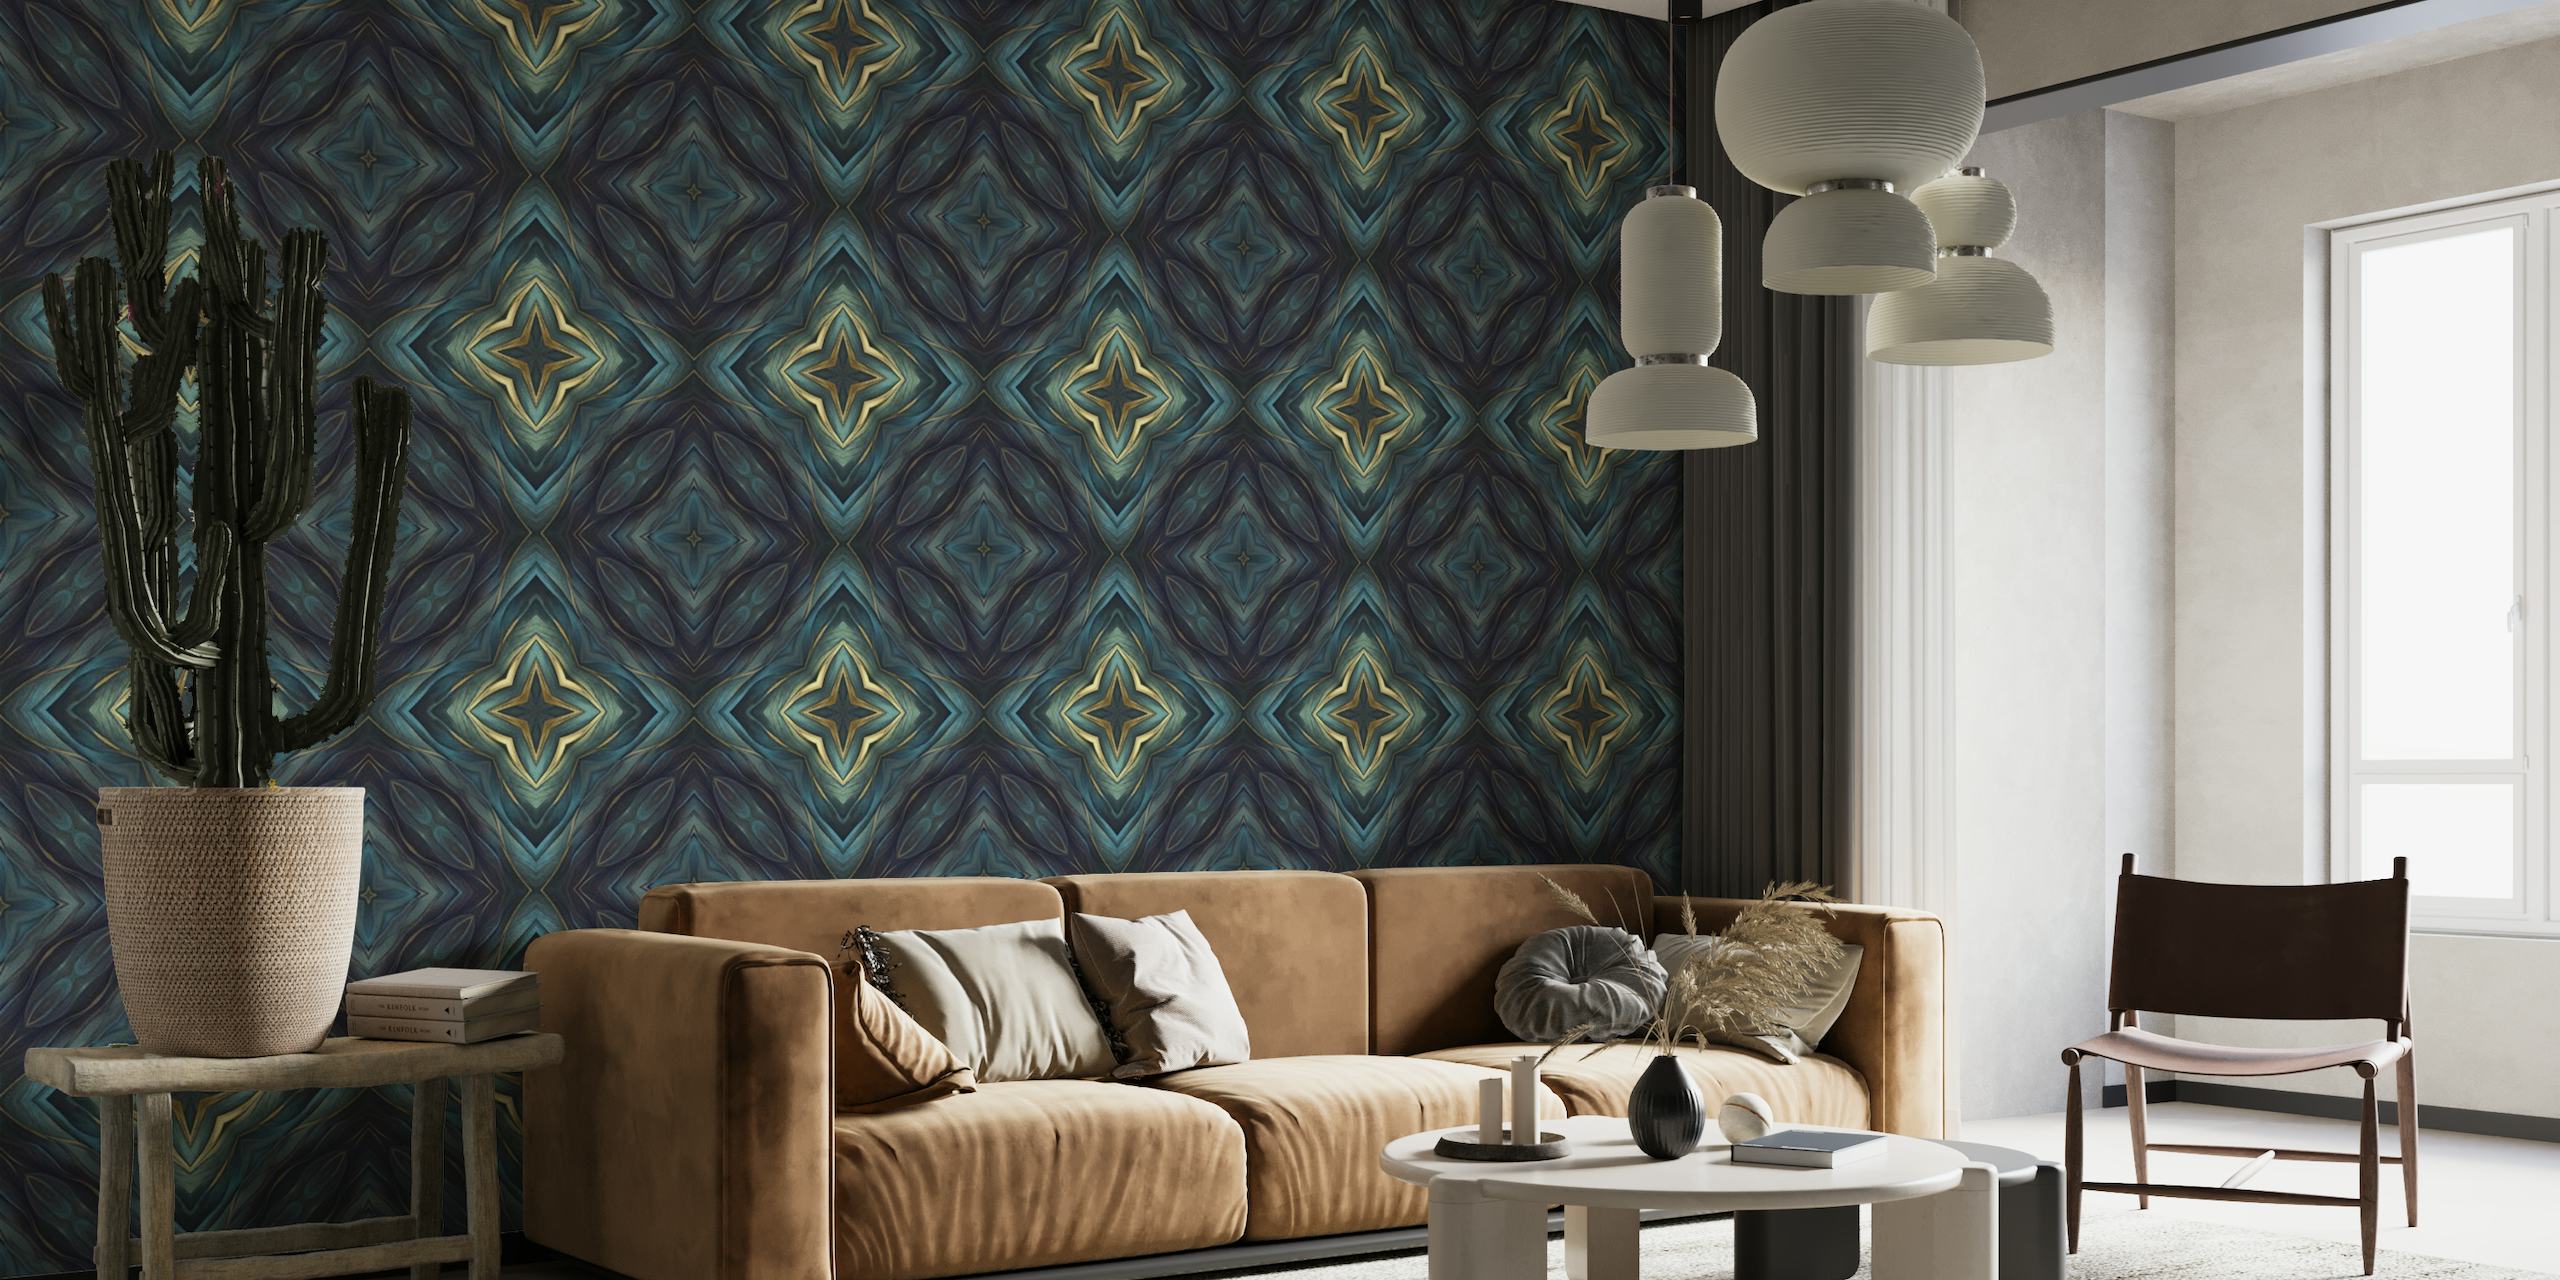 Artisanal Mediterranean Tile Design Blue Gold_2 tapetit